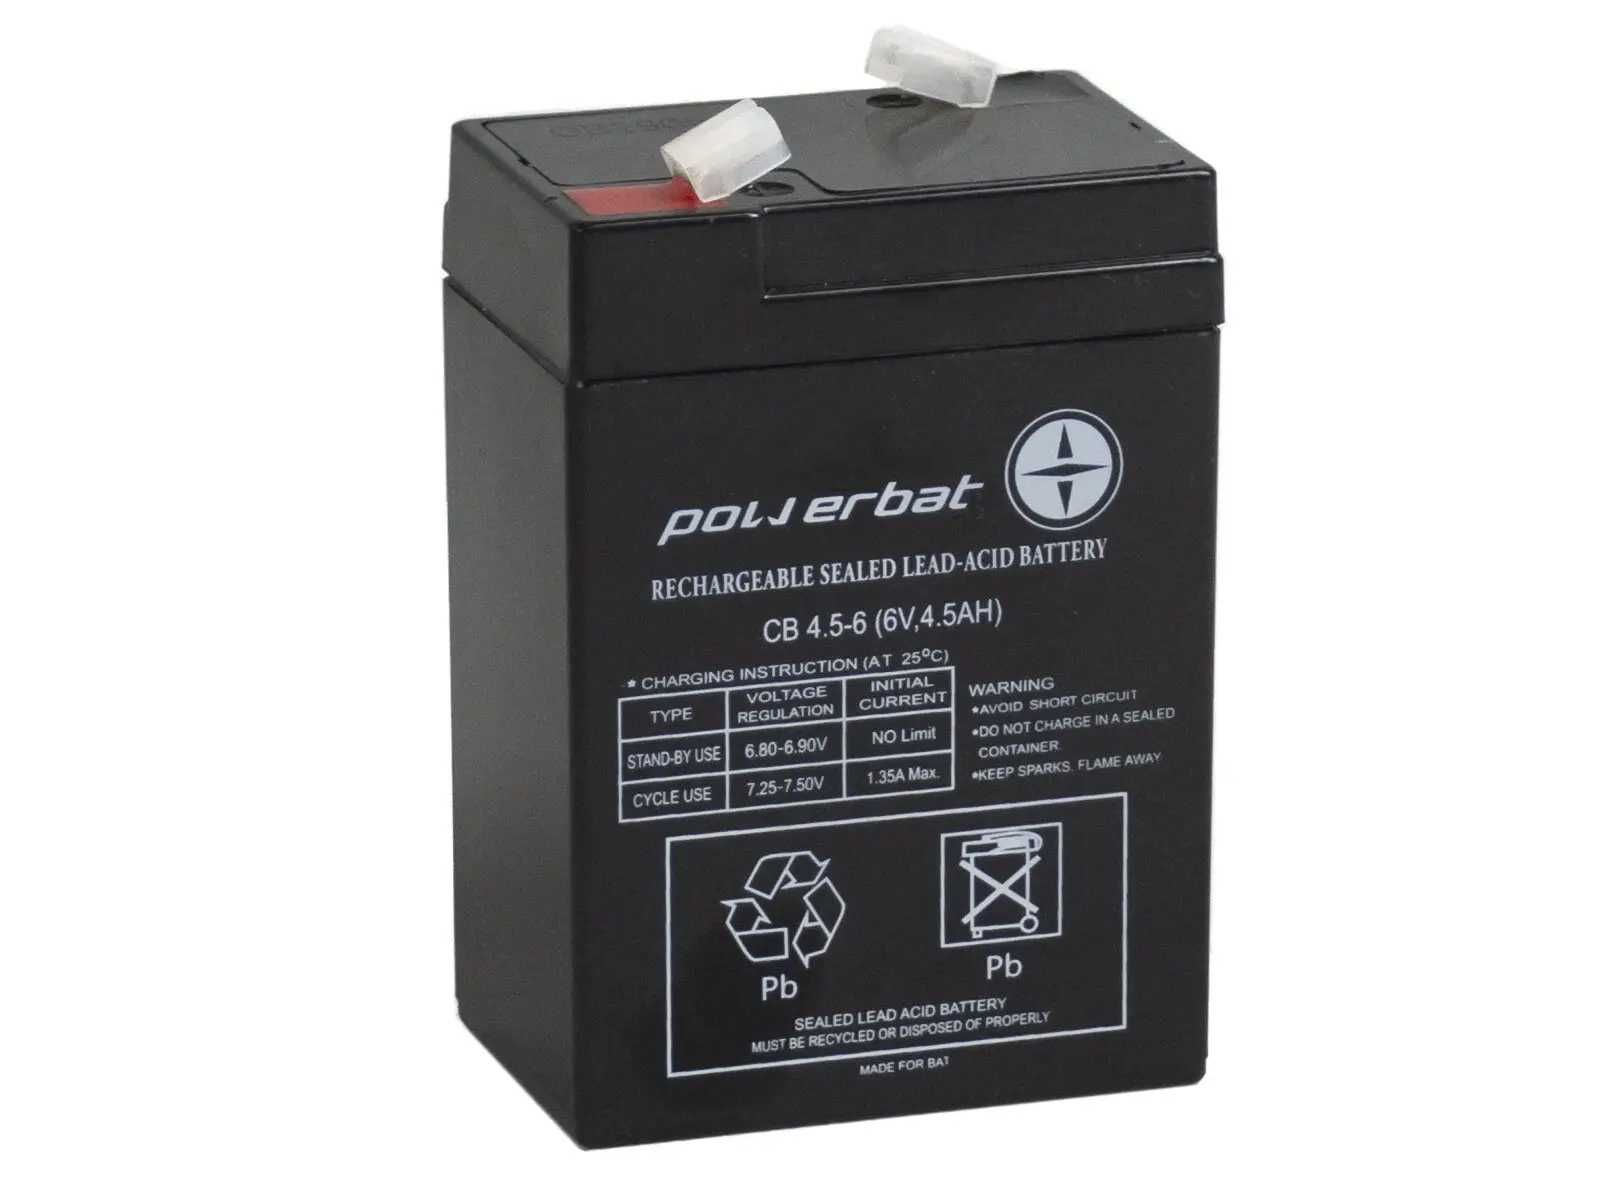 Akumulator Powerbat 6V 4,5 Ah CB 4.5-6 AGM